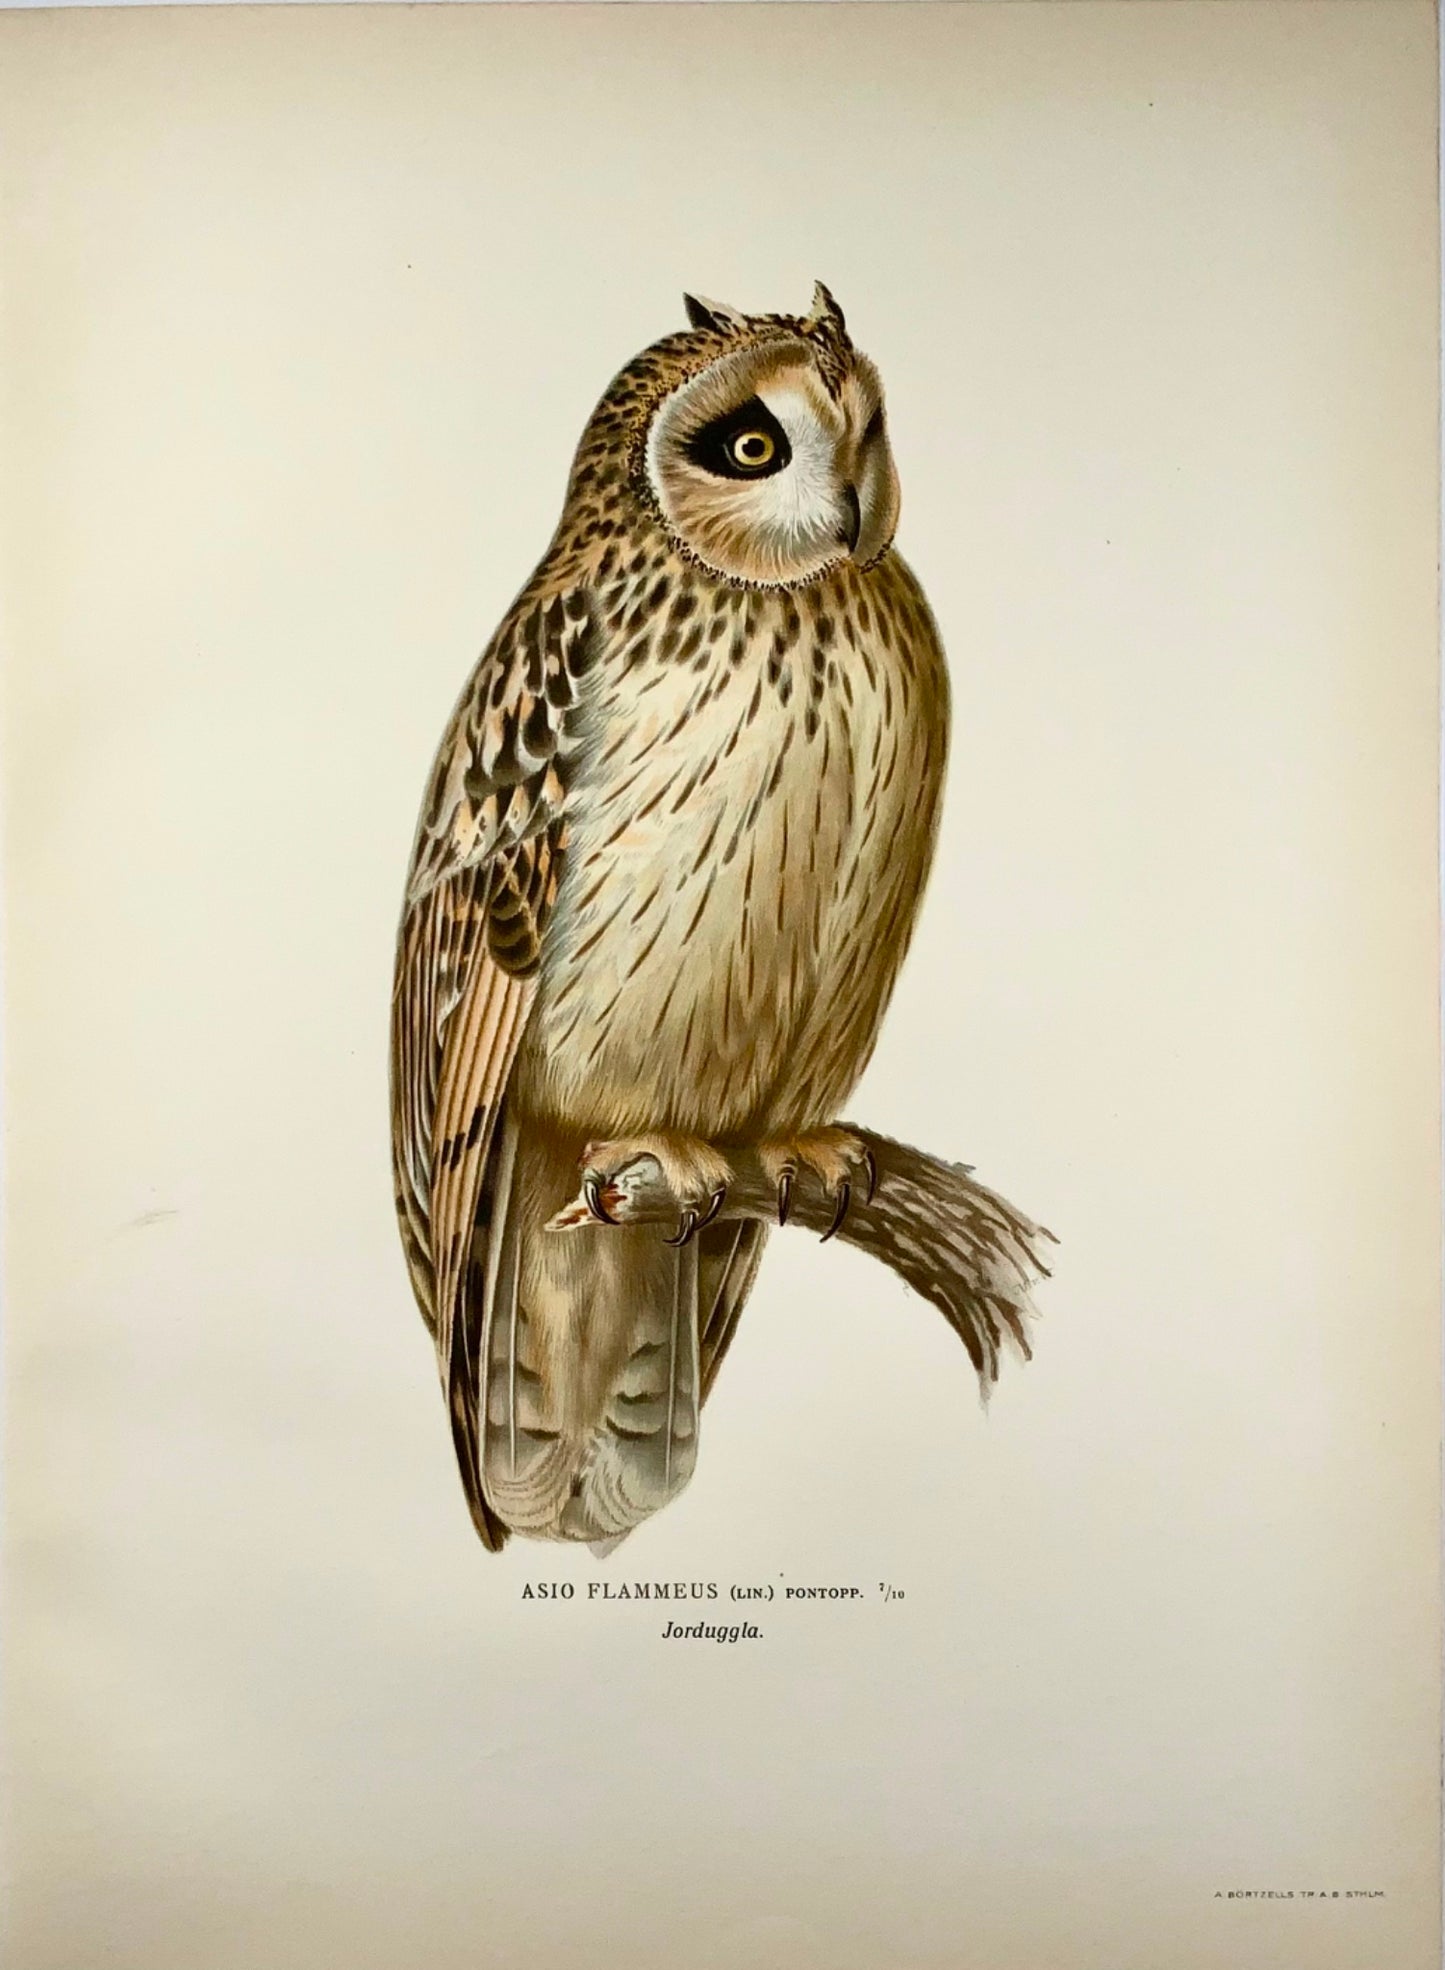 1918 Von Wright, Gufo di palude, litografia in folio di grandi dimensioni, ornitologia